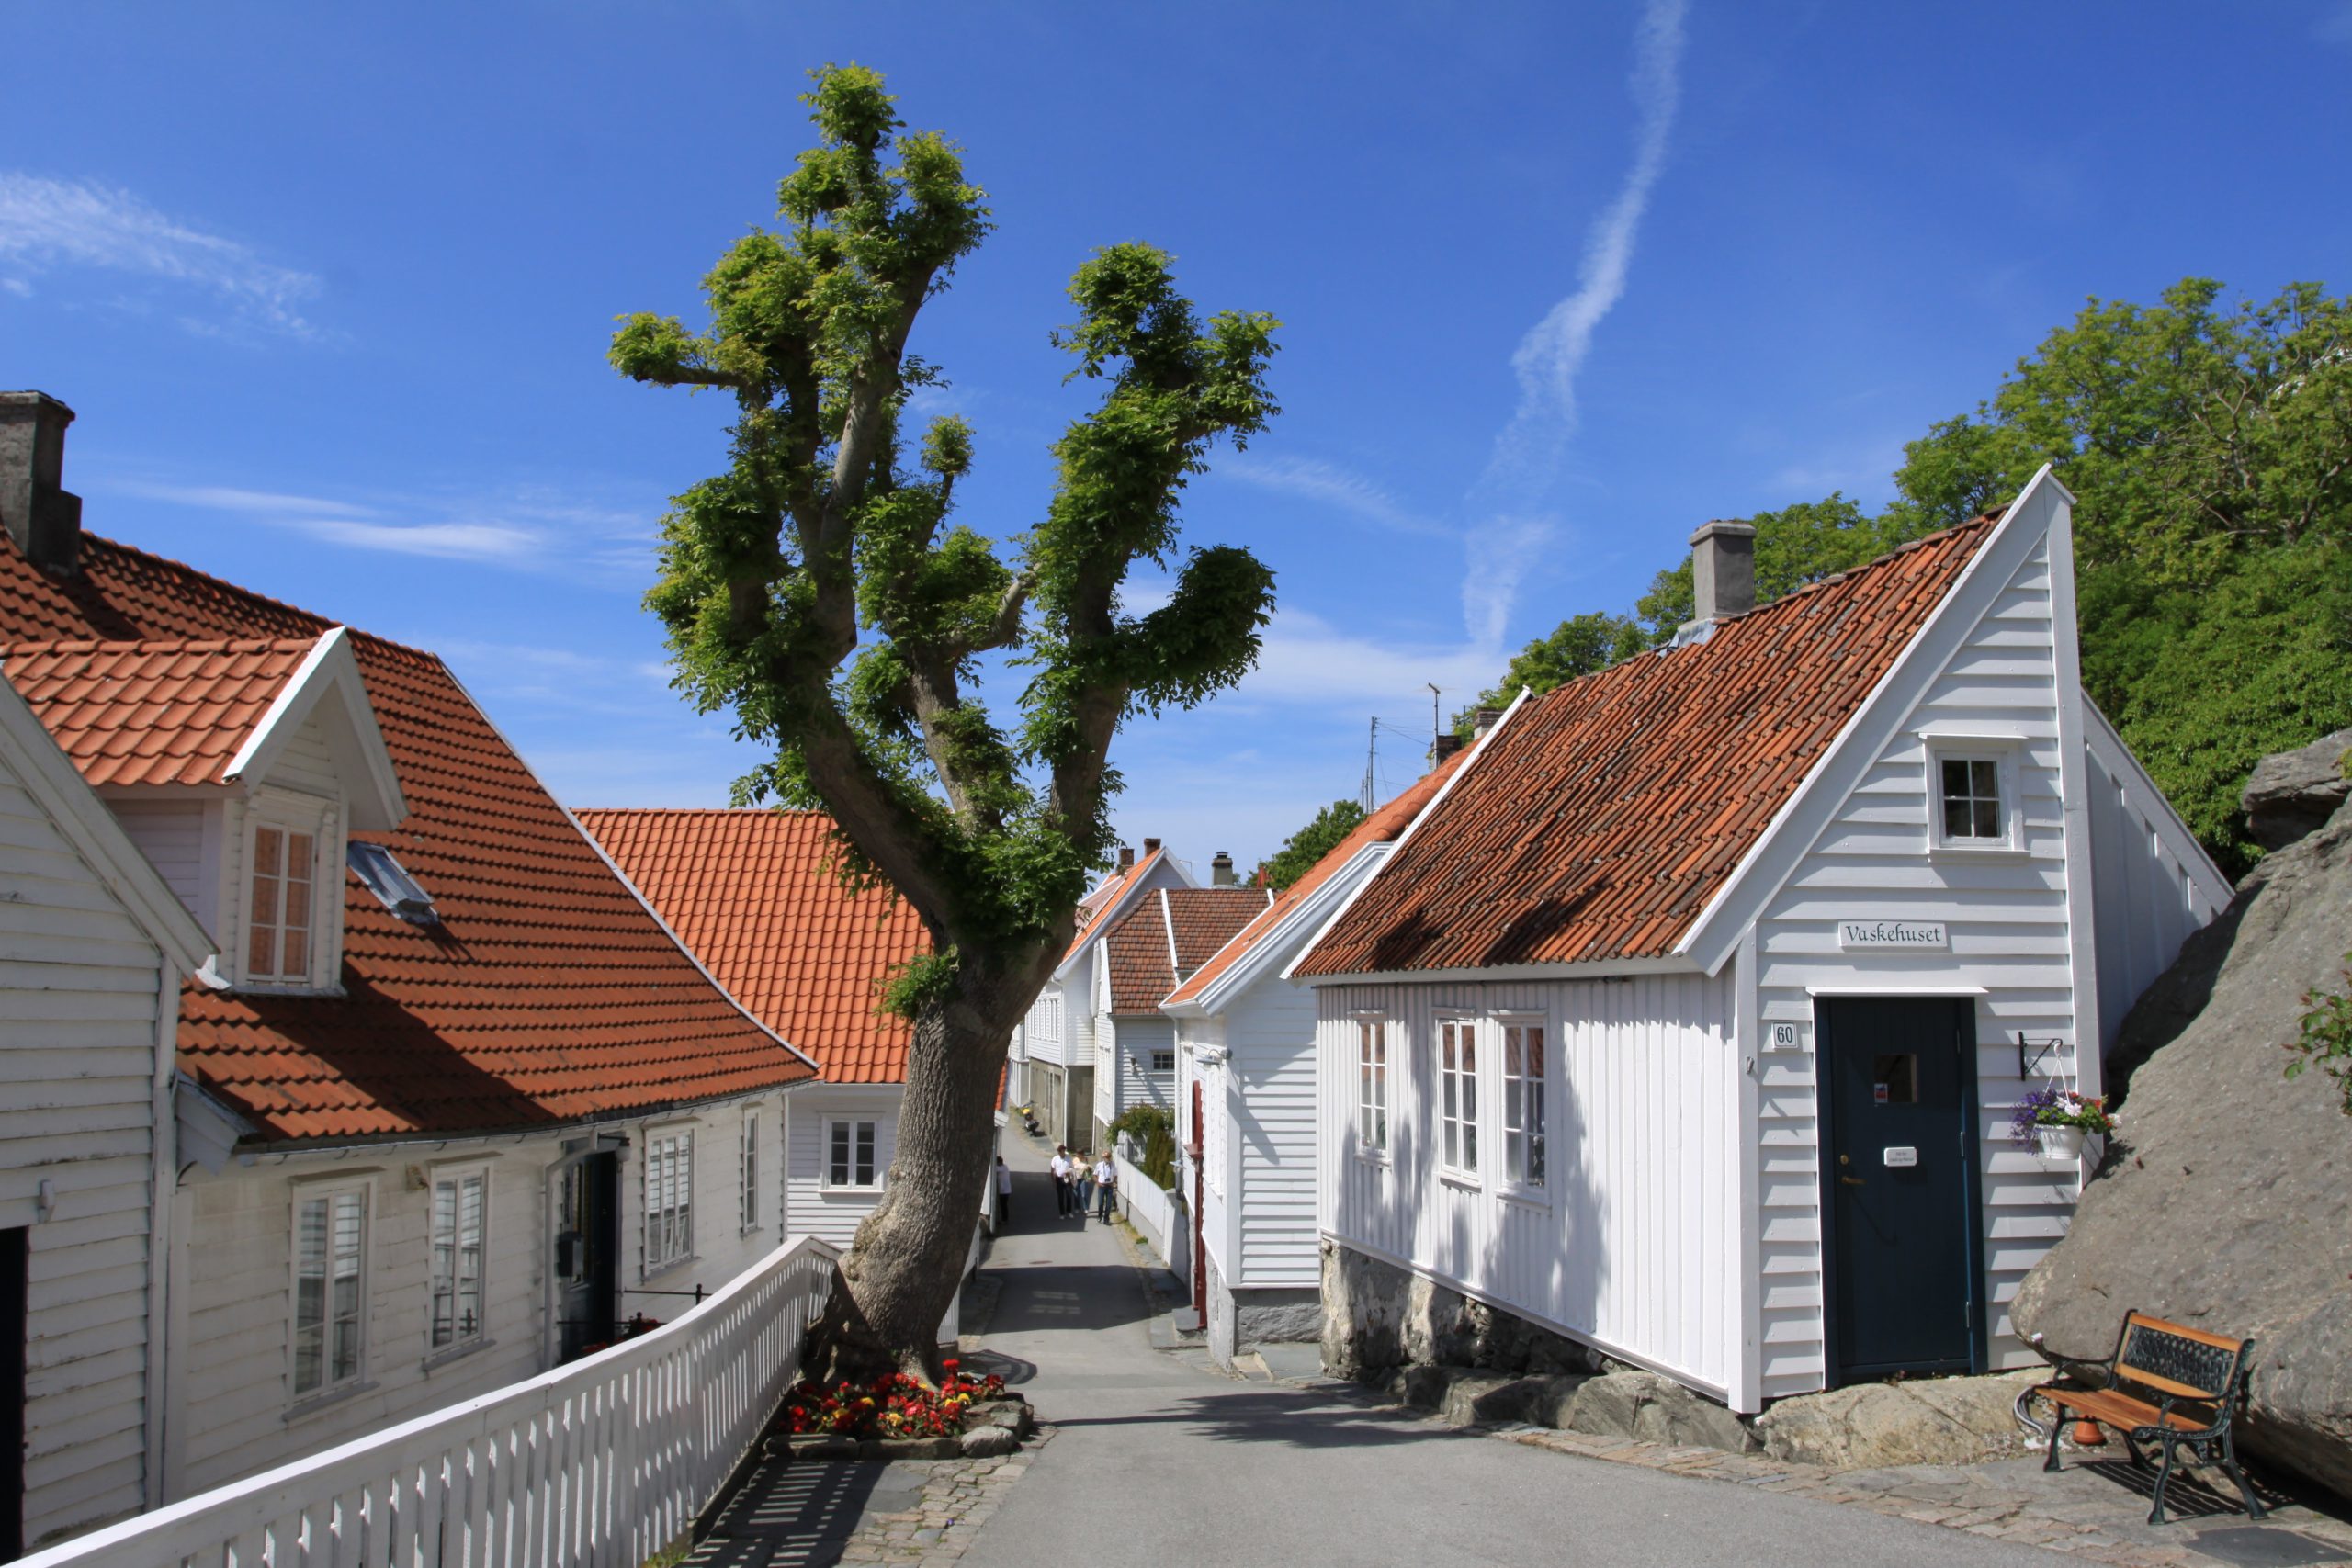 Bilde Frå Skudeneshavn. Foto: Ørjan B. Iversen